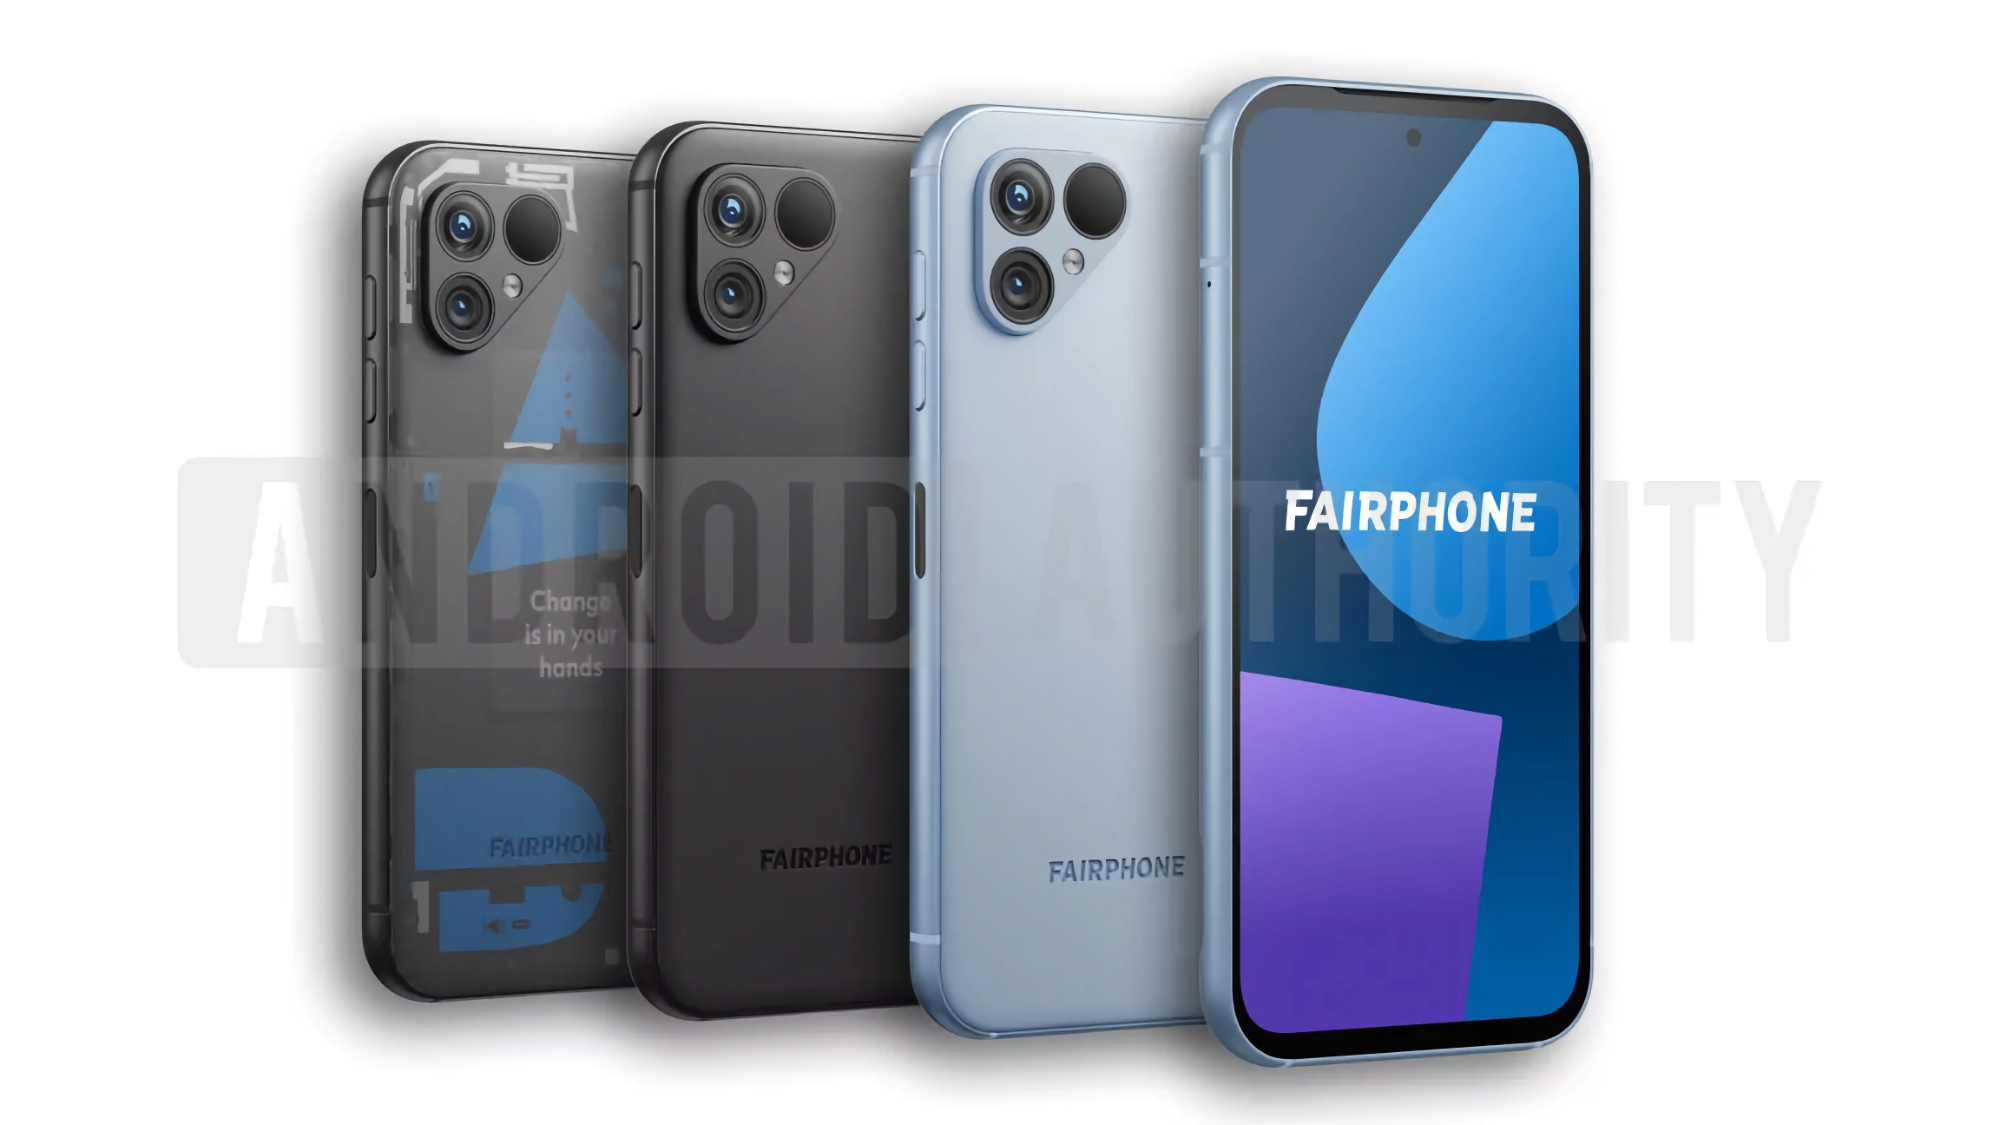 Så här kommer Fairphone 5 att se ut: en smartphone med femårsstöd, dubbelkamera och tre färger